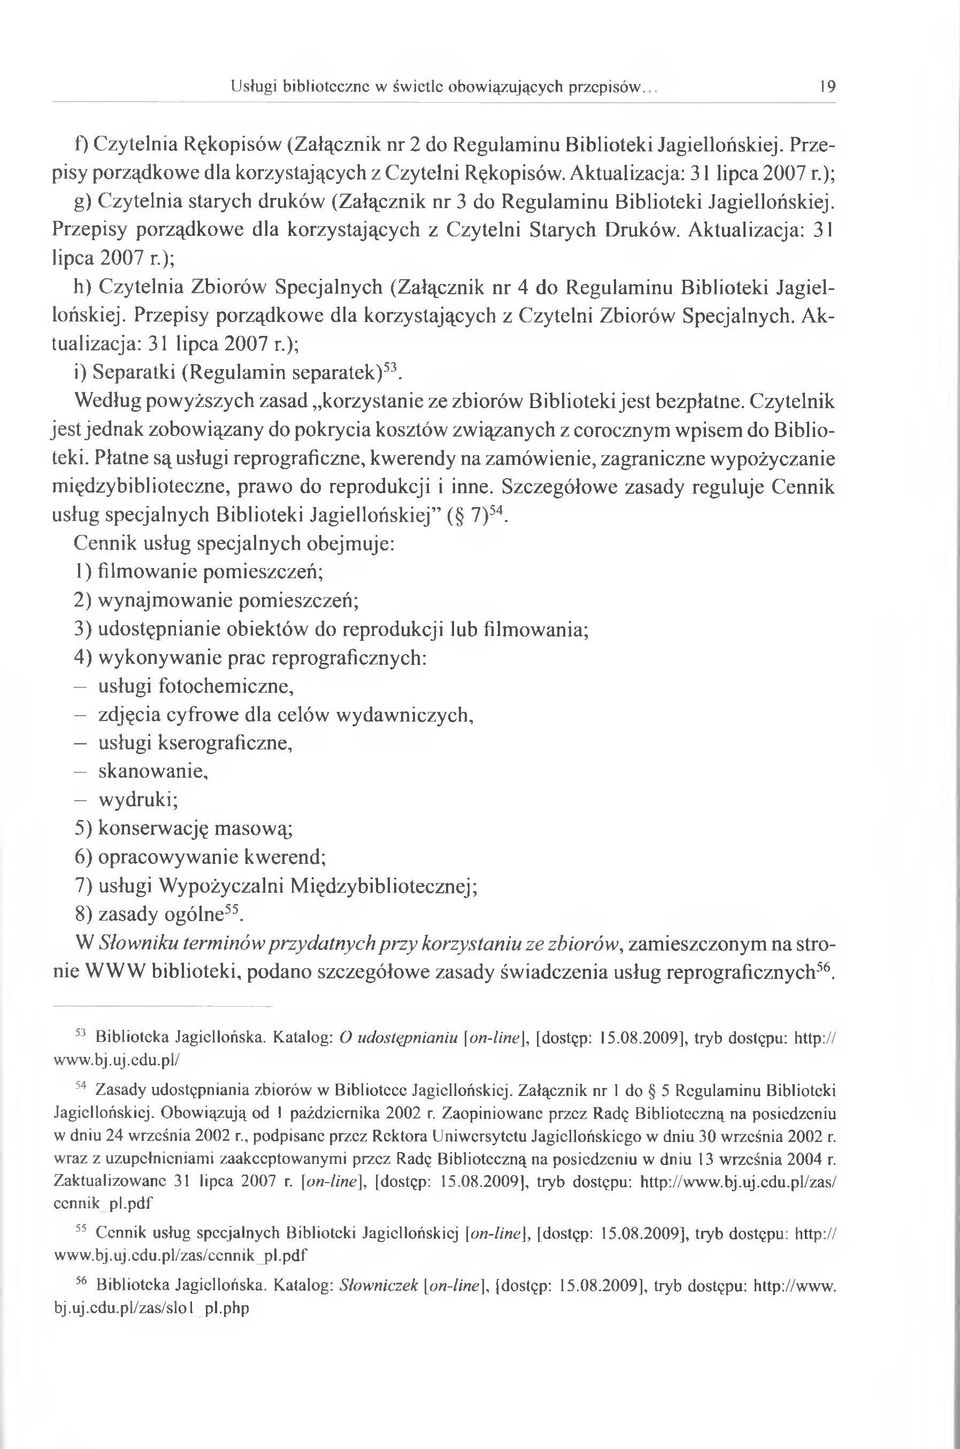 Aktualizacja: 31 lipca 2007 r.); h) Czytelnia Zbiorów Specjalnych (Załącznik nr 4 do Regulaminu Biblioteki Jagiellońskiej. Przepisy porządkowe dla korzystających z Czytelni Zbiorów Specjalnych.